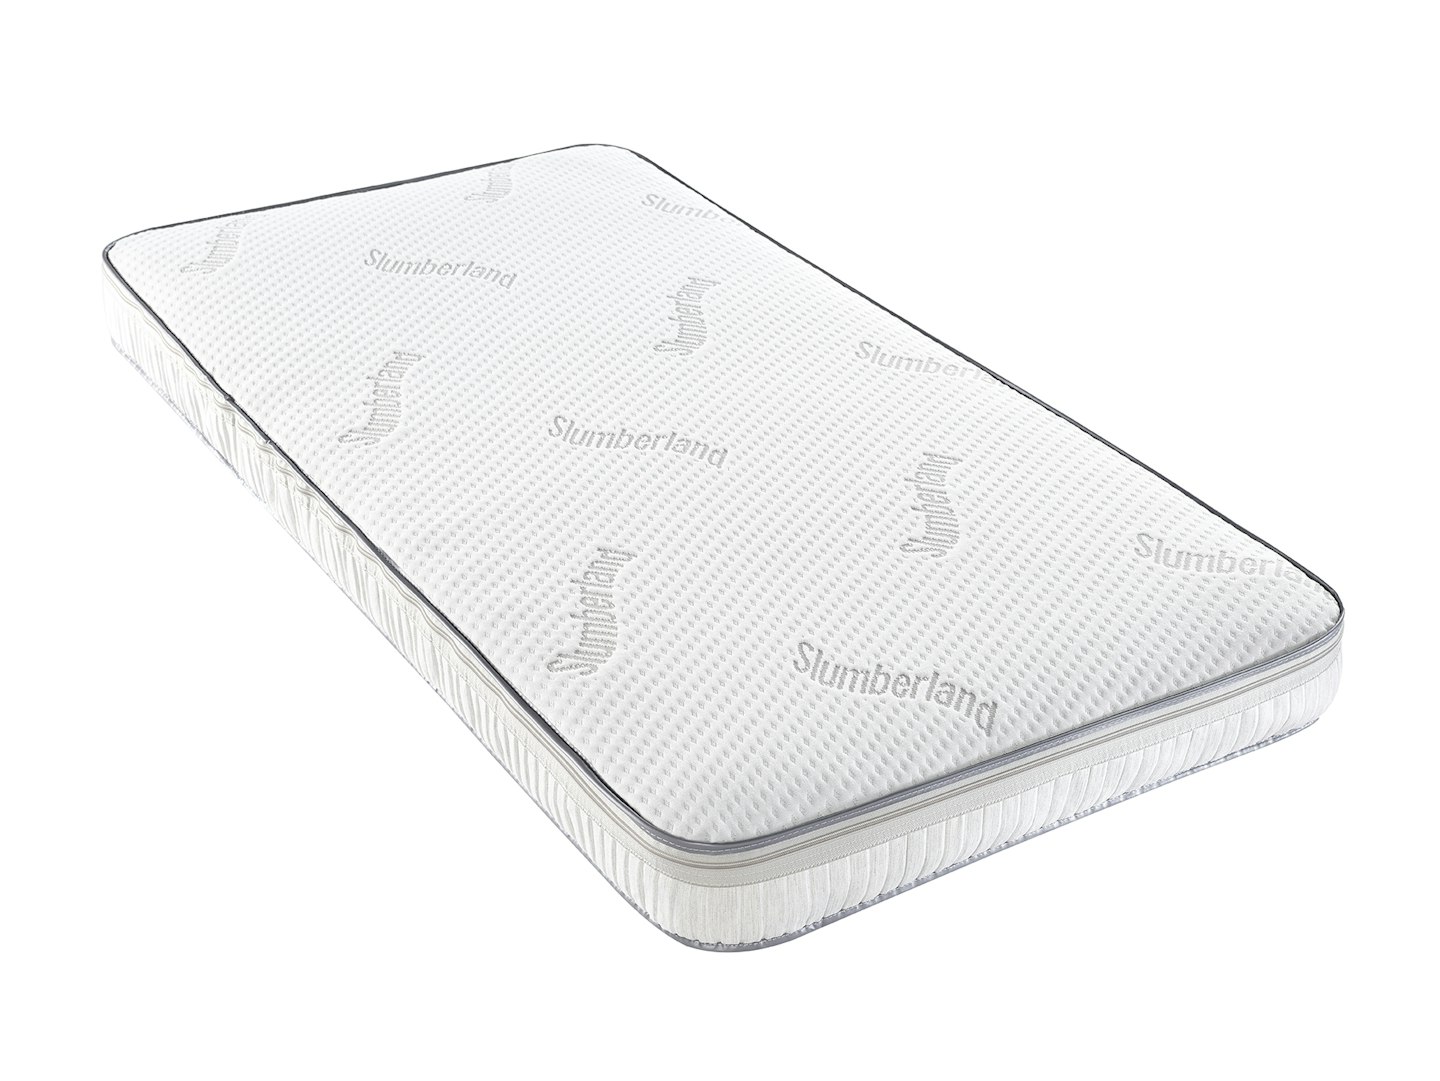 slumberland luxury pocket sprung mattress review